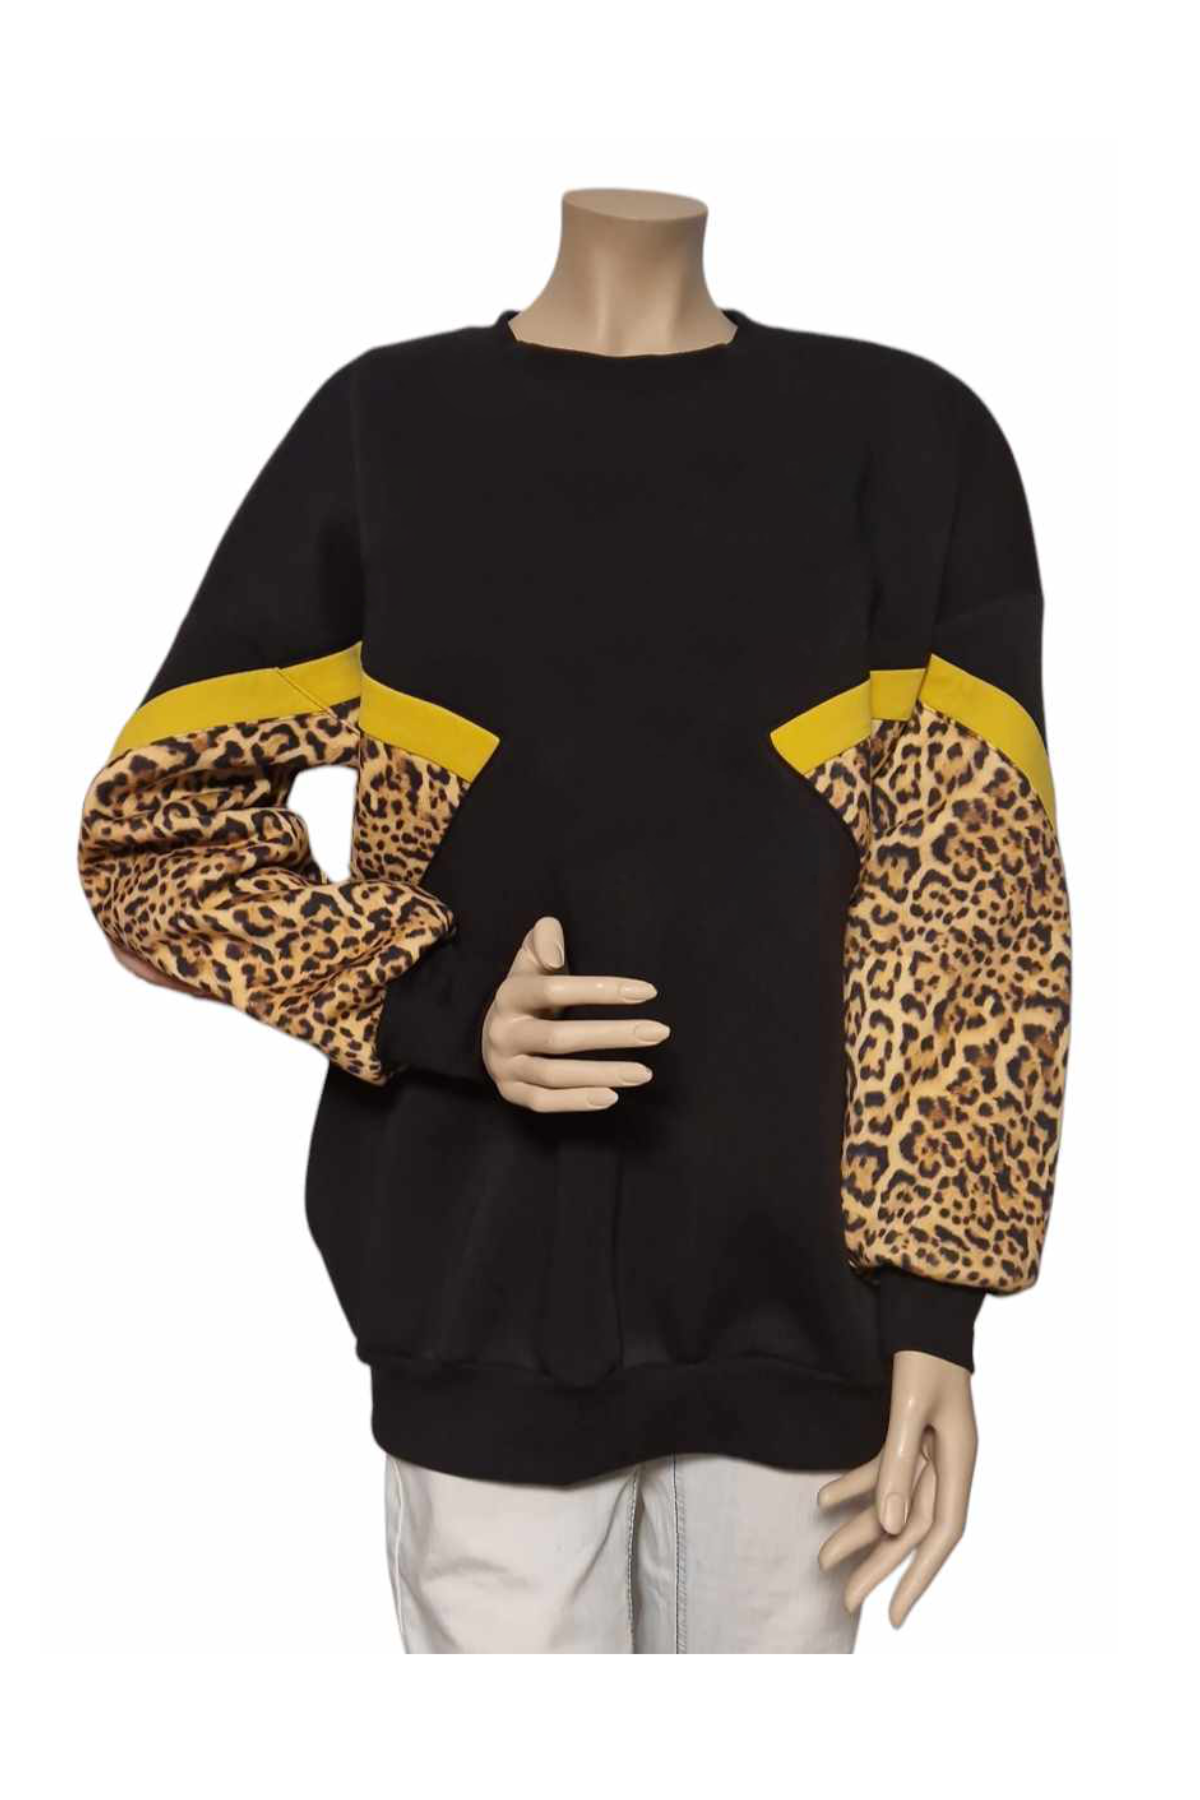 Sehr warmes Leoparden-Sweatshirt